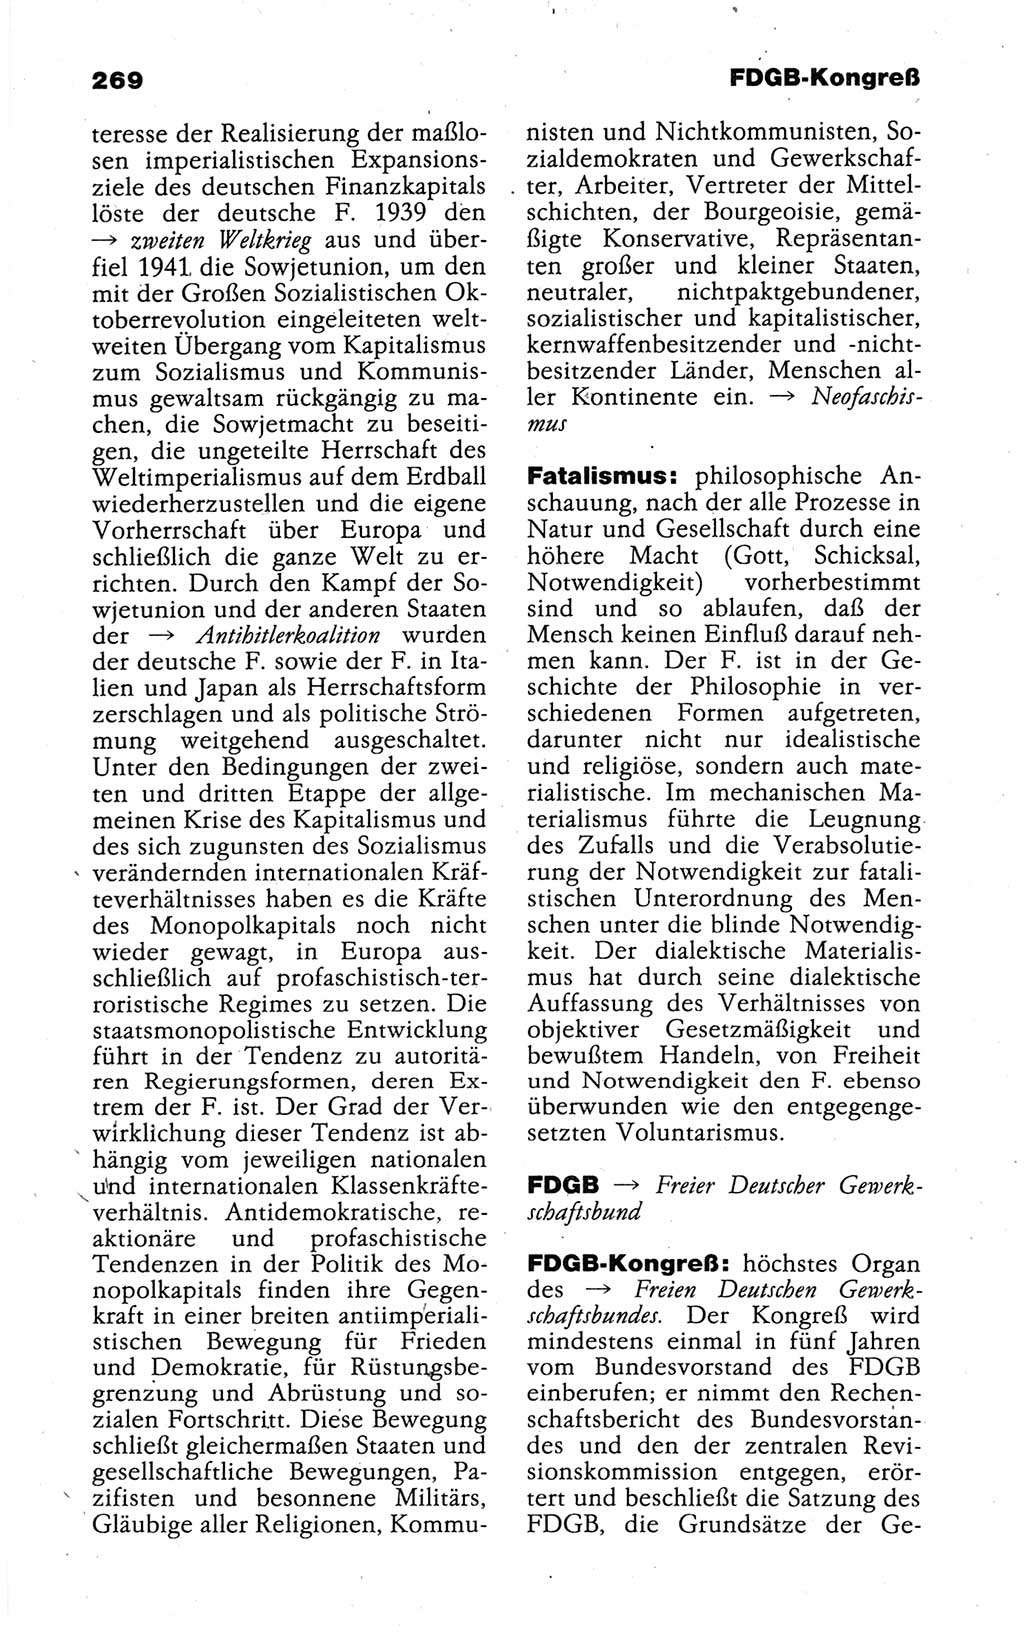 Kleines politisches Wörterbuch [Deutsche Demokratische Republik (DDR)] 1988, Seite 269 (Kl. pol. Wb. DDR 1988, S. 269)